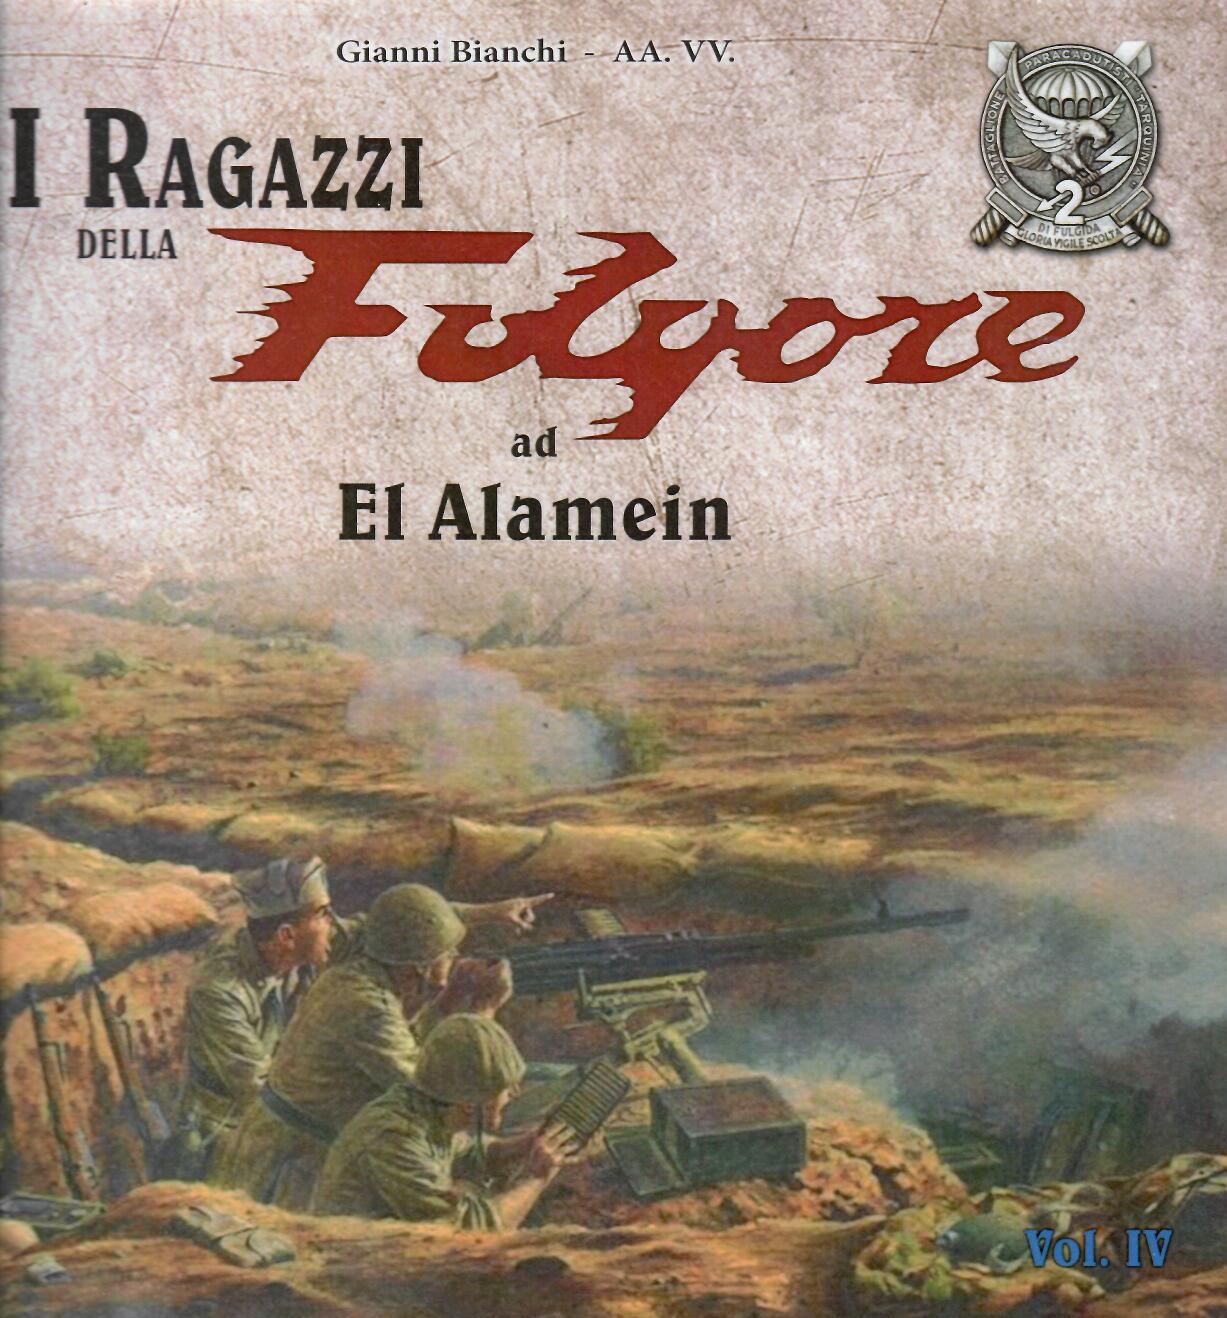 I ragazzi della Folgore ad El Alamein vol. IV